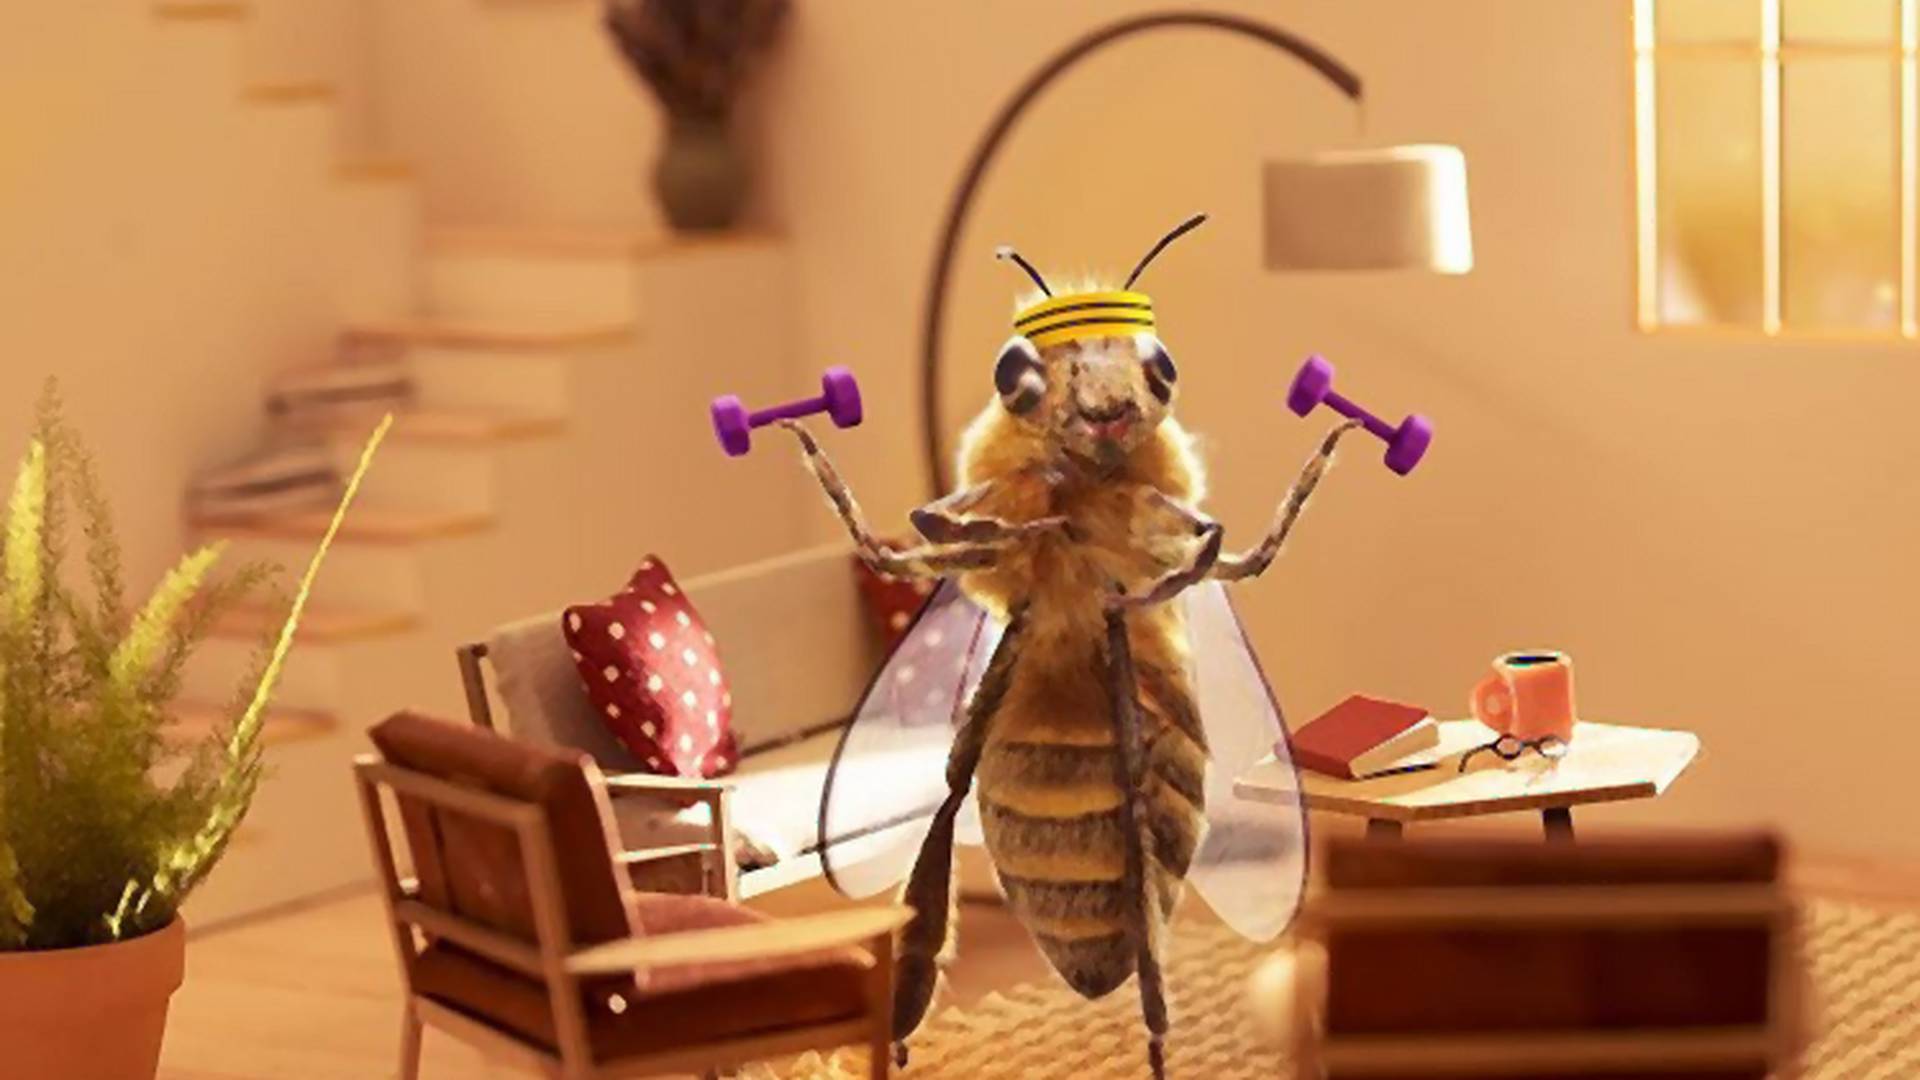 Pszczoła-influencerka zbiera pieniądze na ratowanie gatunku na Instagramie